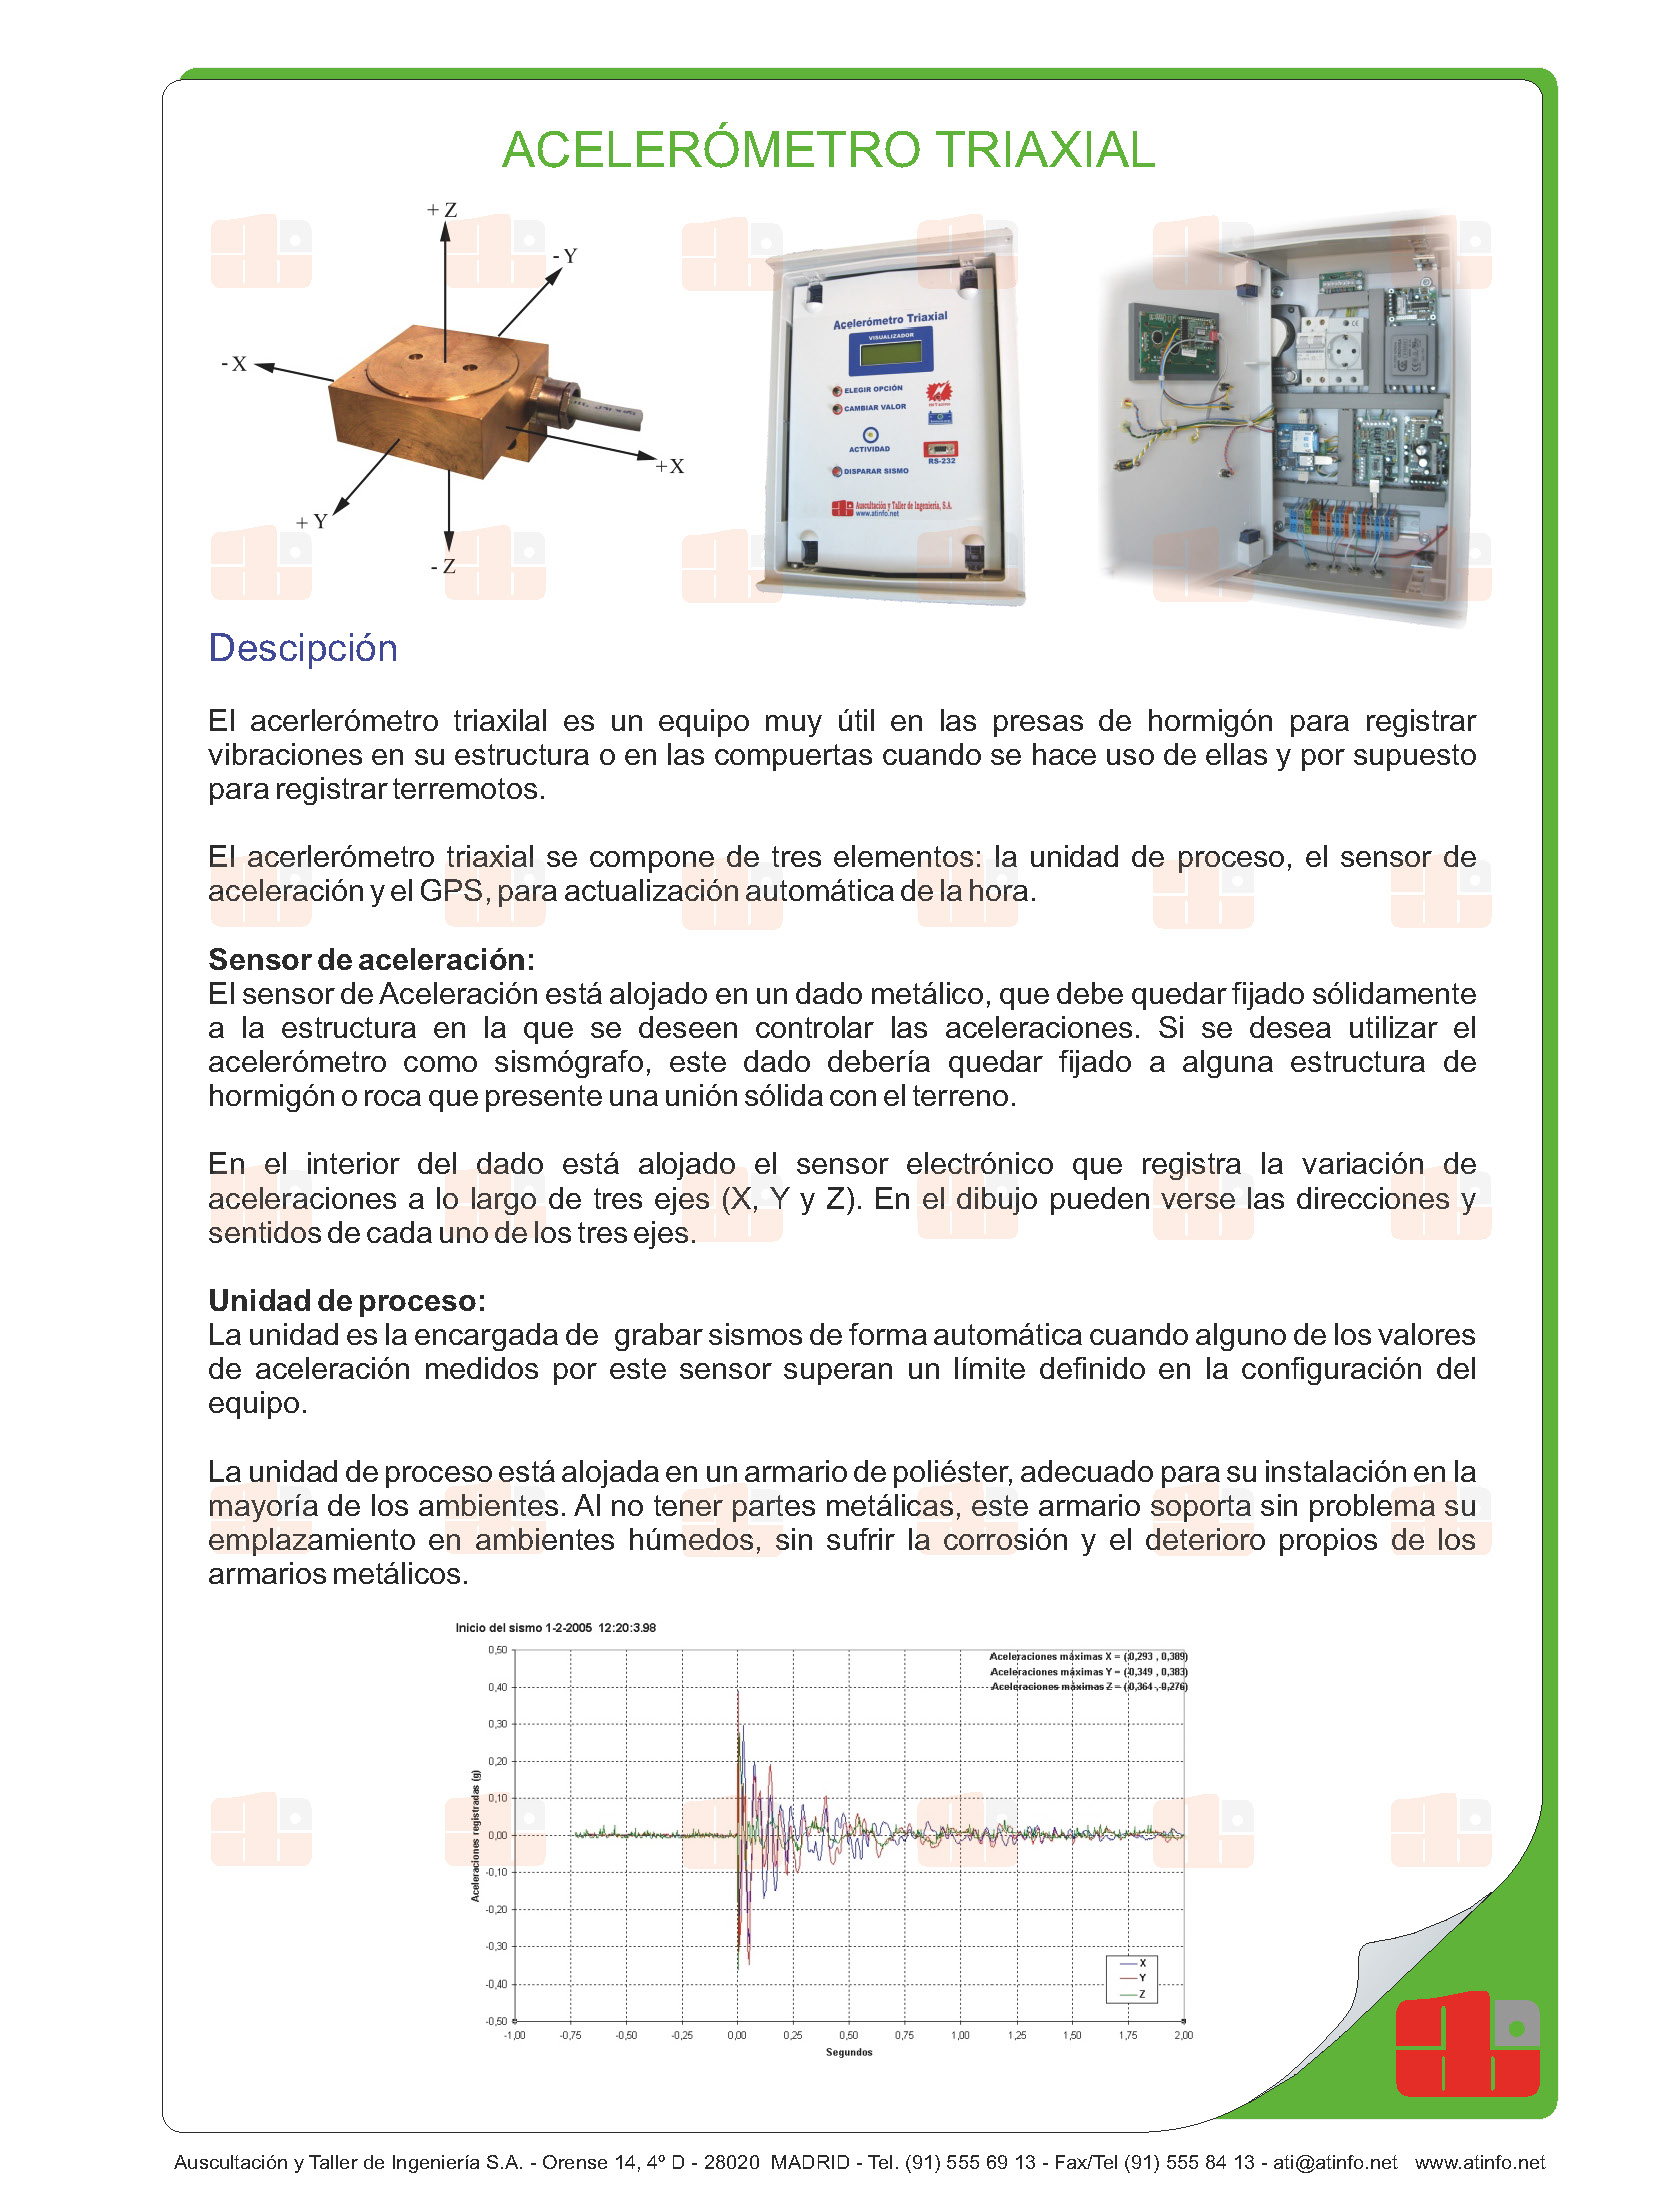 auscultacion-ingenieria-atinfo-automatización-acelerómetro-triaxial